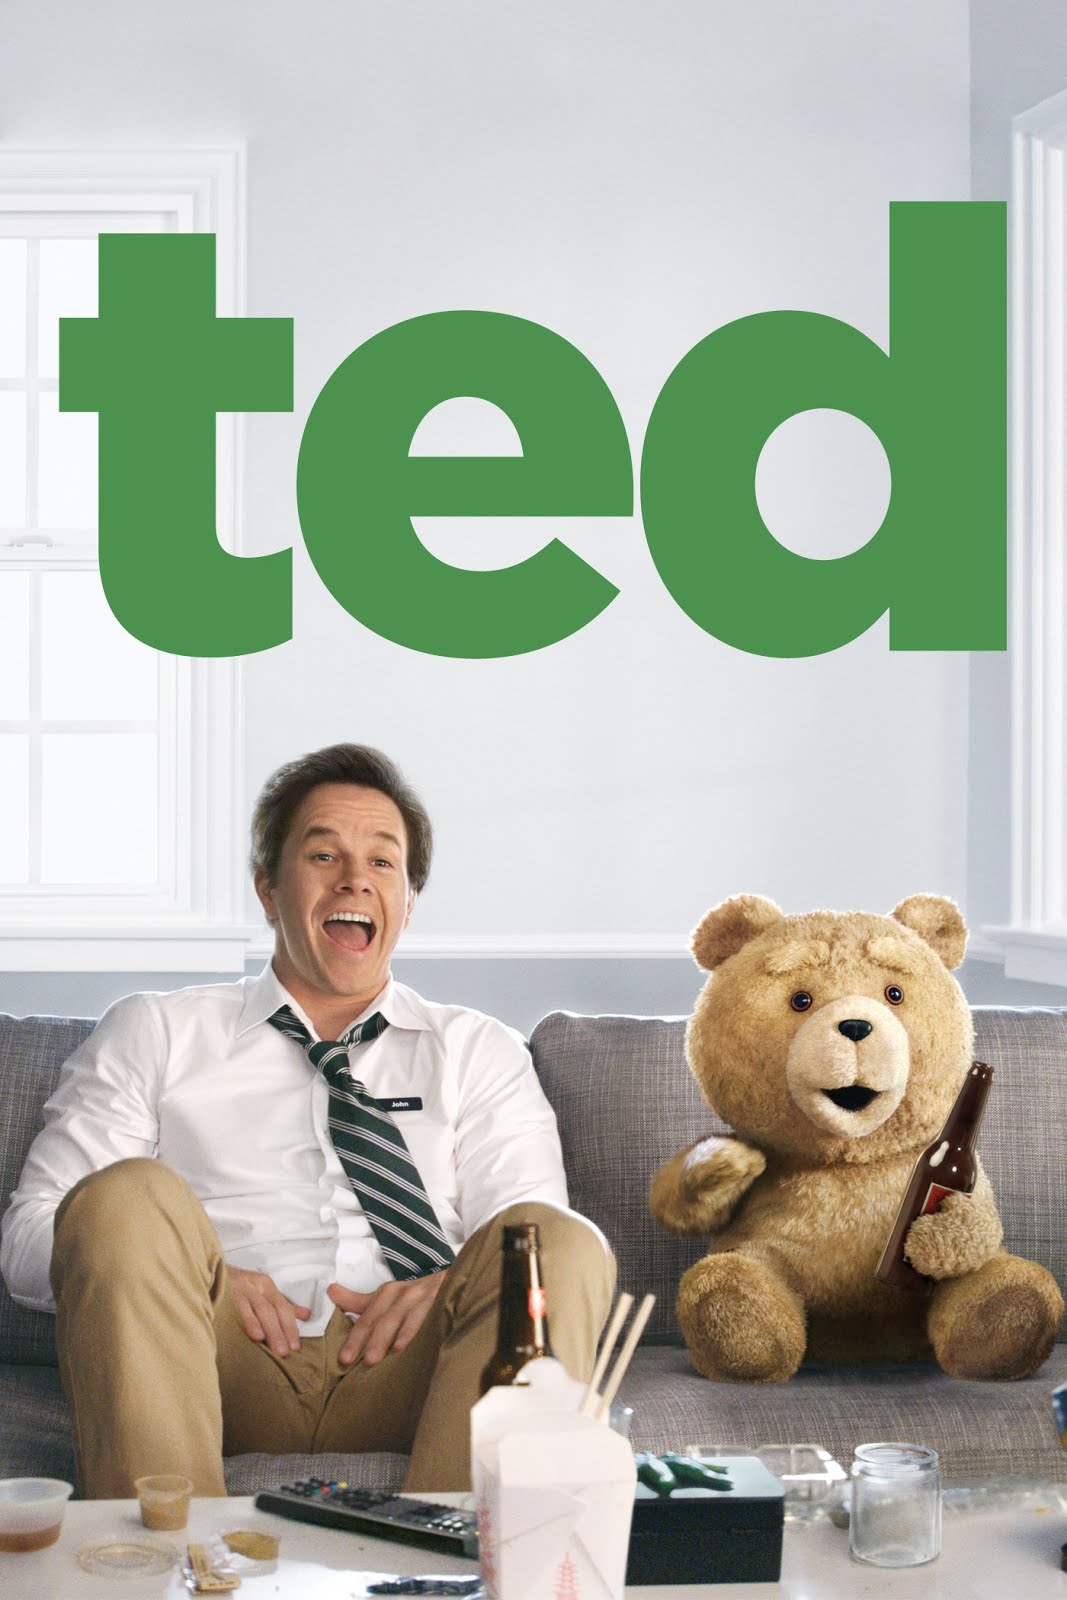 Ted-Full-Movie-Download-Free-in-720p-BRRip.jpg